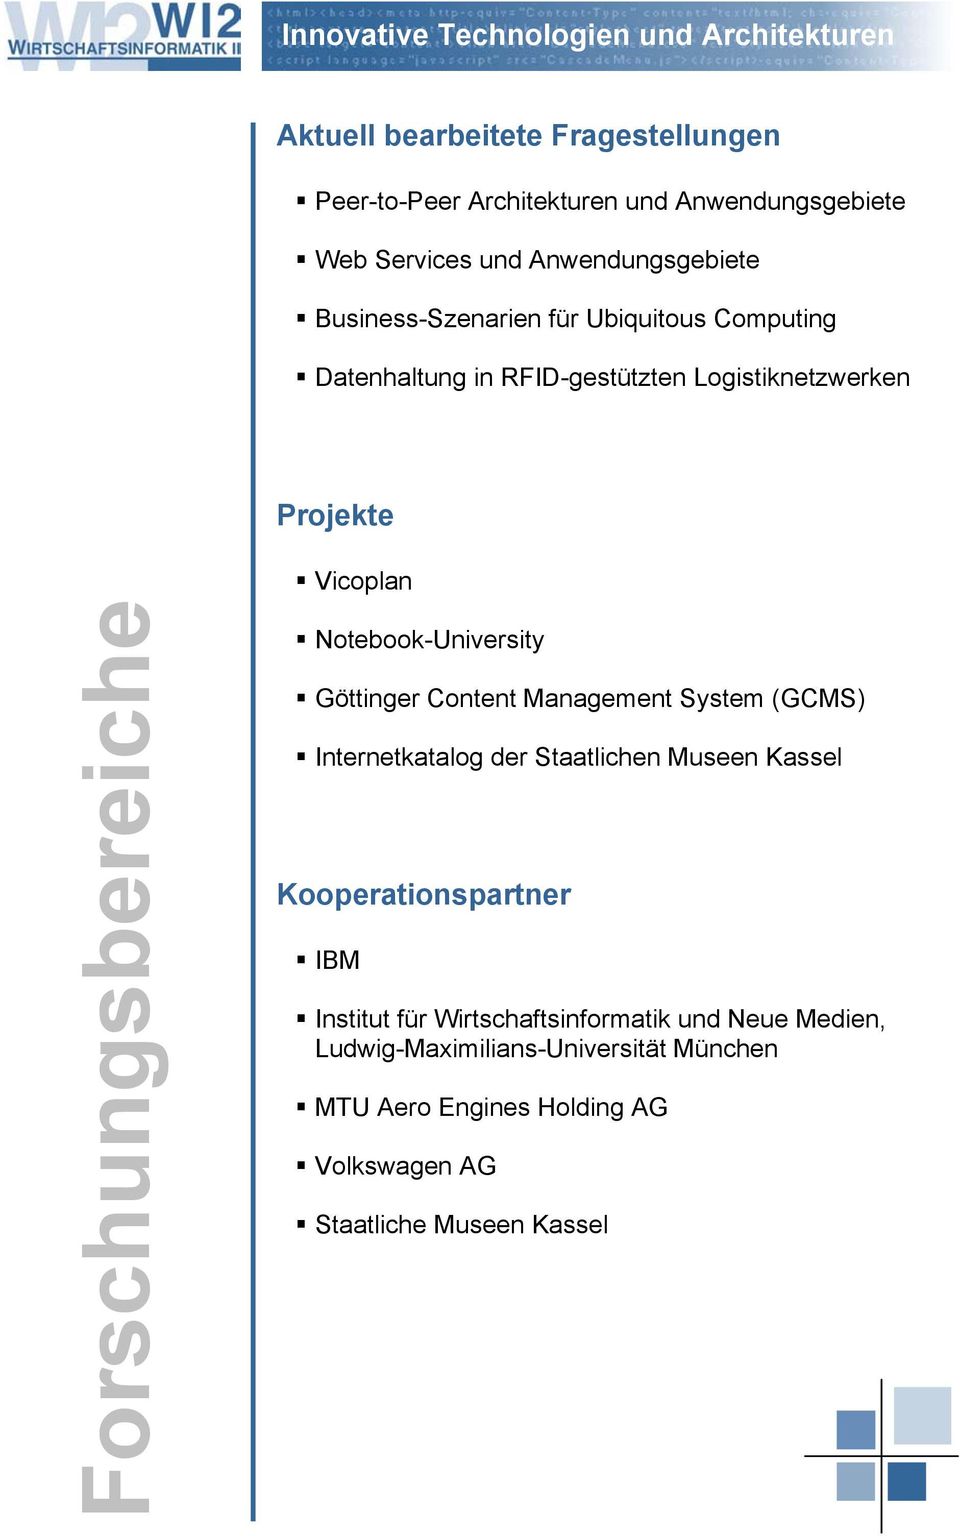 Forschungsbereiche Vicoplan Notebook-University Göttinger Content Management System (GCMS) Internetkatalog der Staatlichen Museen Kassel